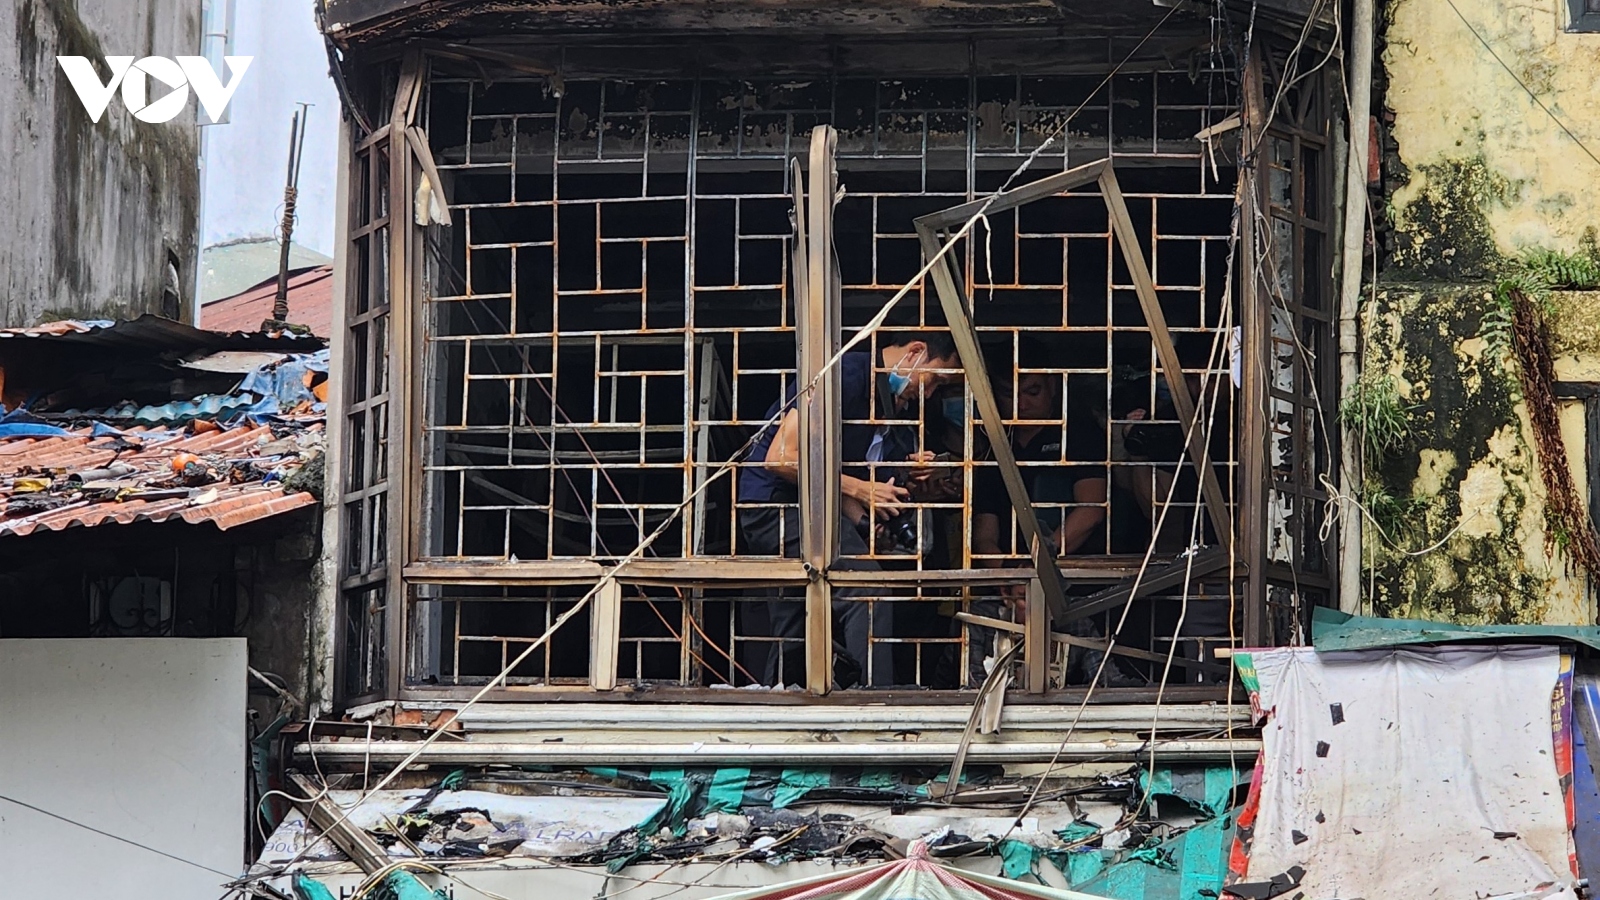 Hiện trường vụ cháy khiến 4 người tử vong tại phố Hàng Lược, Hà Nội